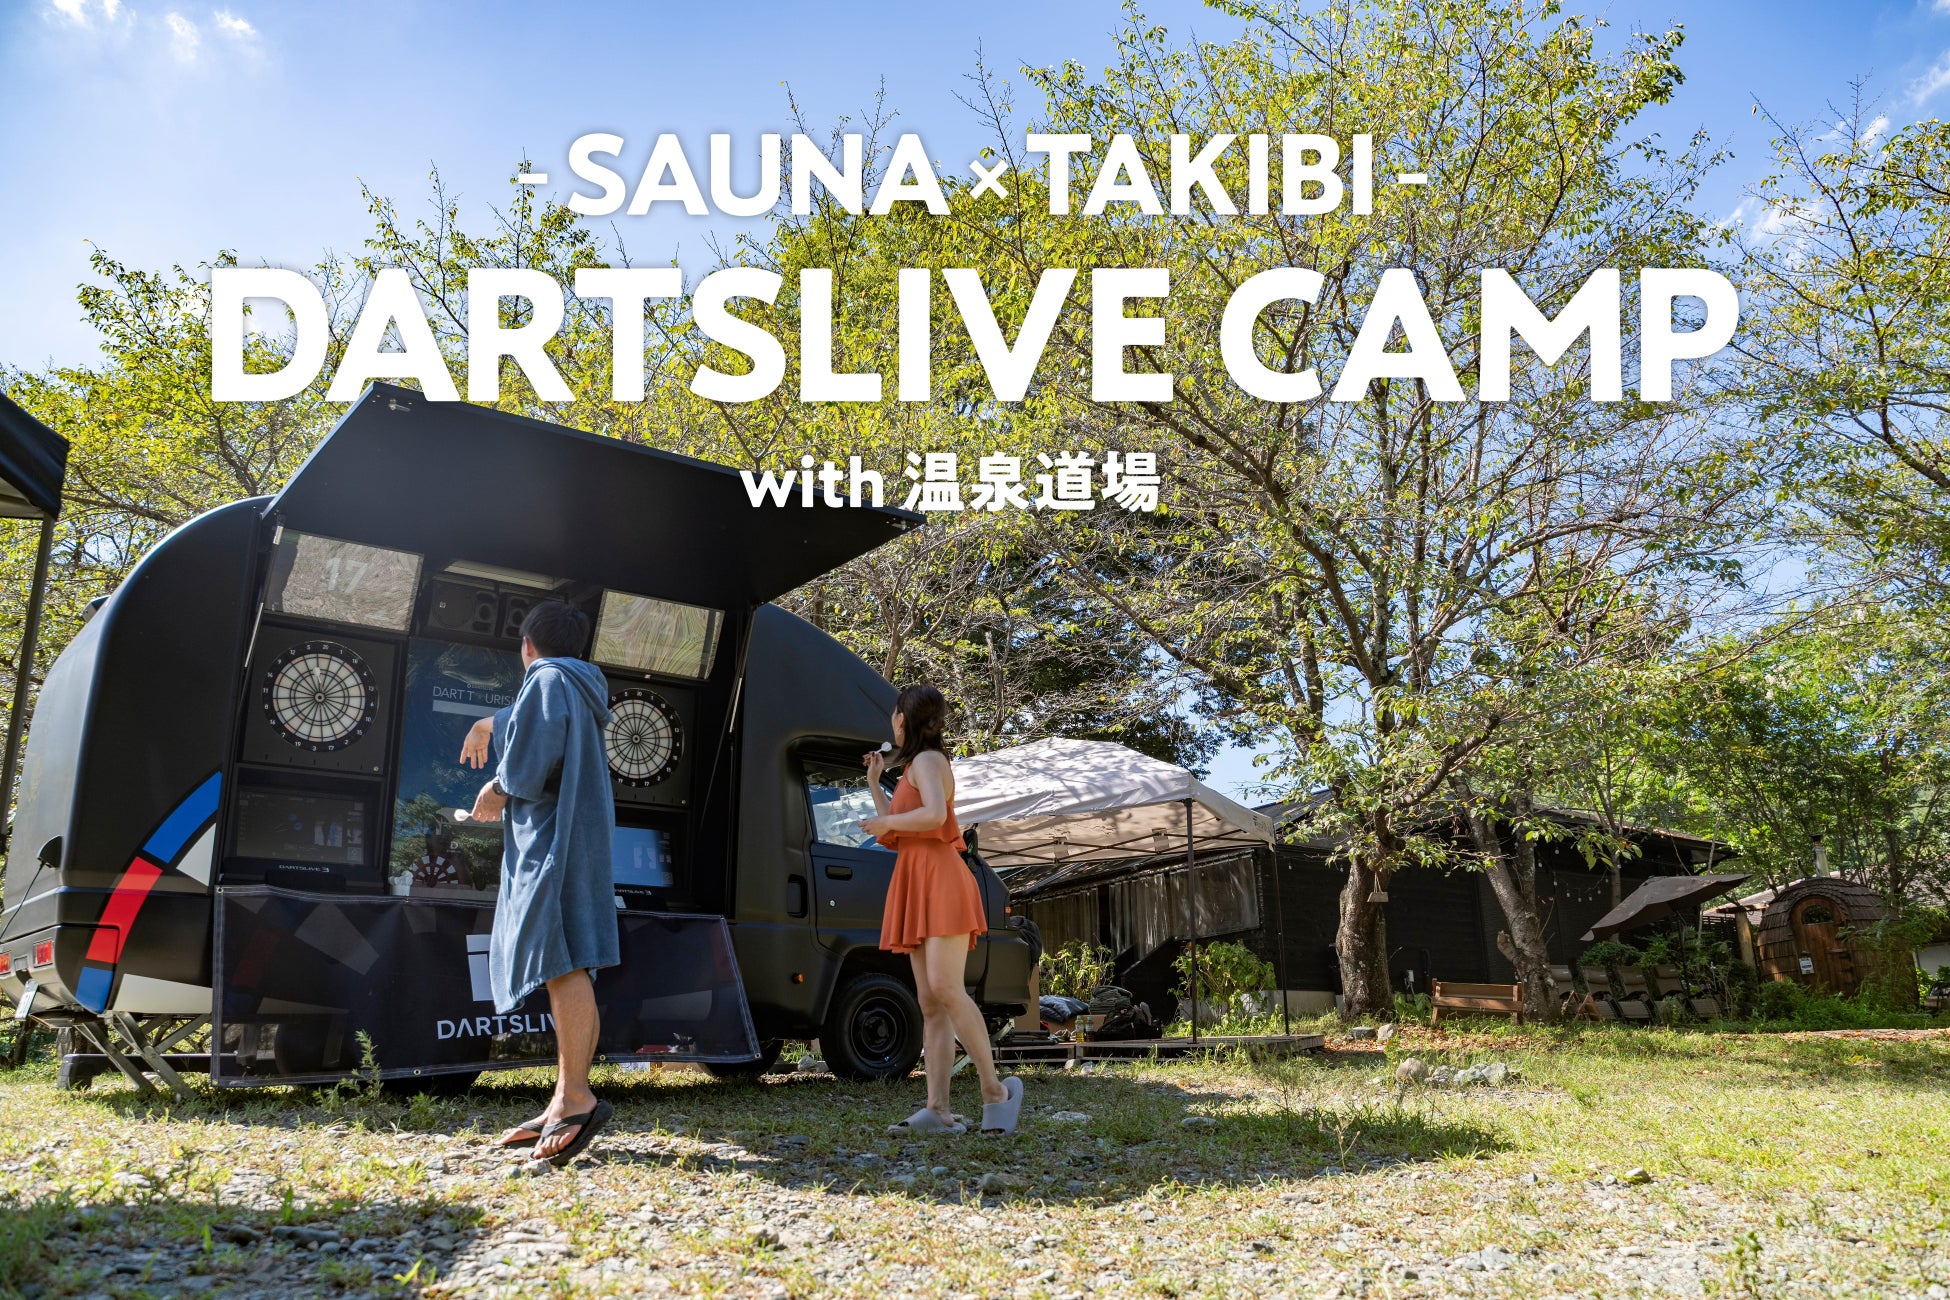 ダーツとアウトドアサウナが楽しめる「DARTSLIVE CAMP～SAUNA×TAKIBI～ with 温泉道場」を開催のサブ画像1